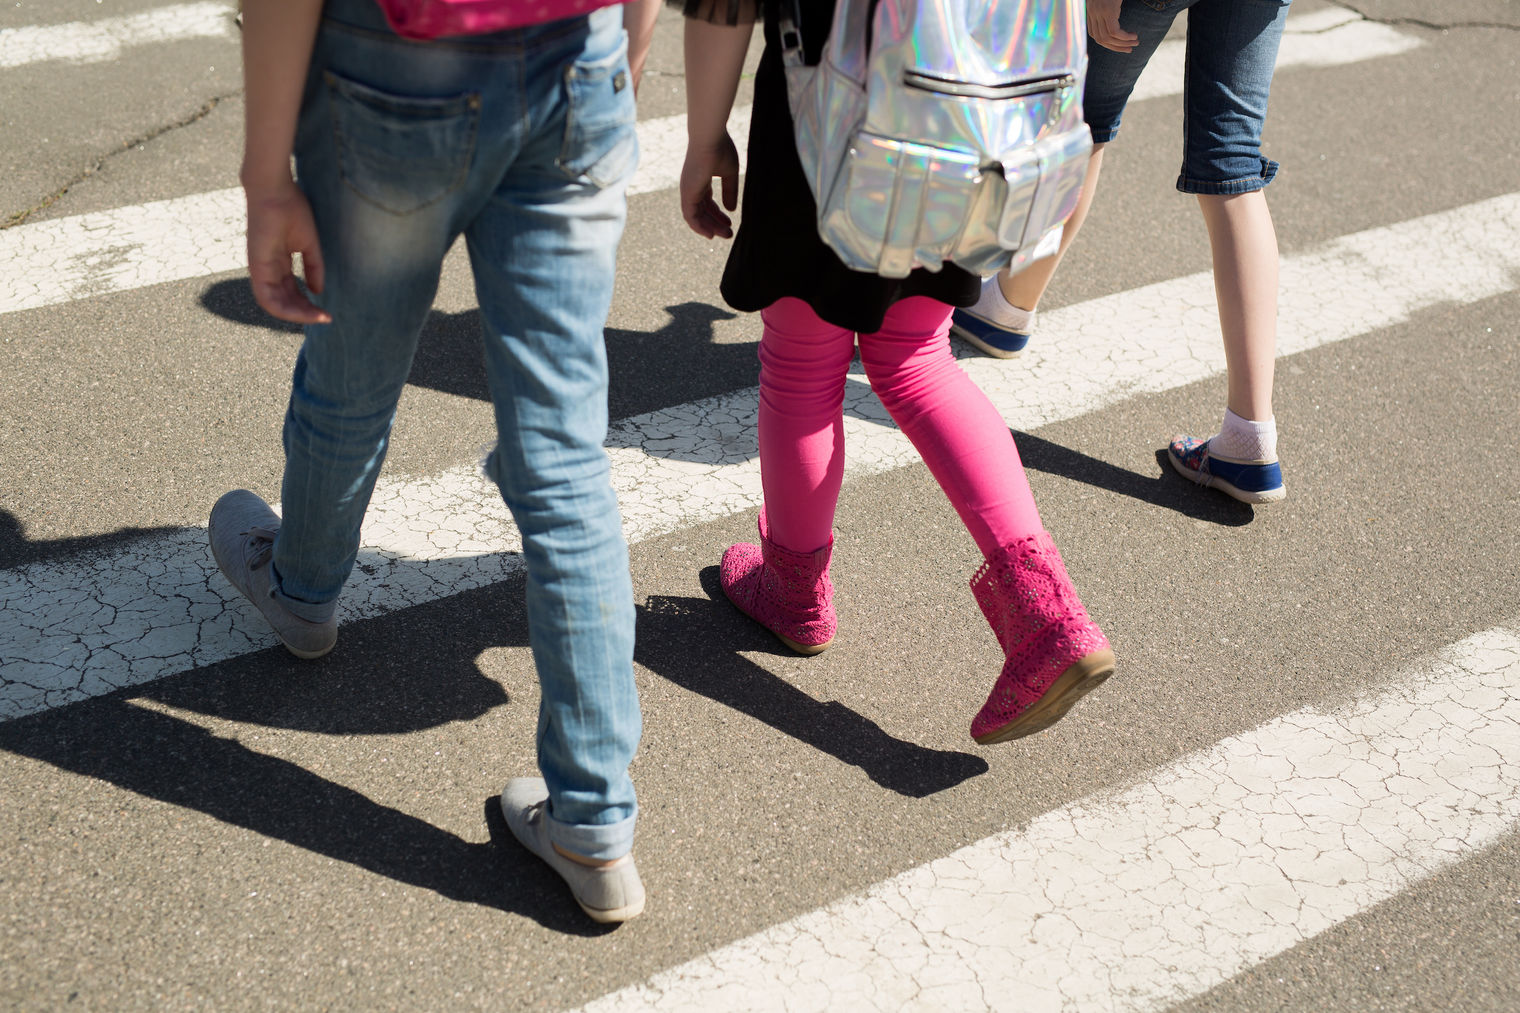 legs/feet of children walking in crosswalk